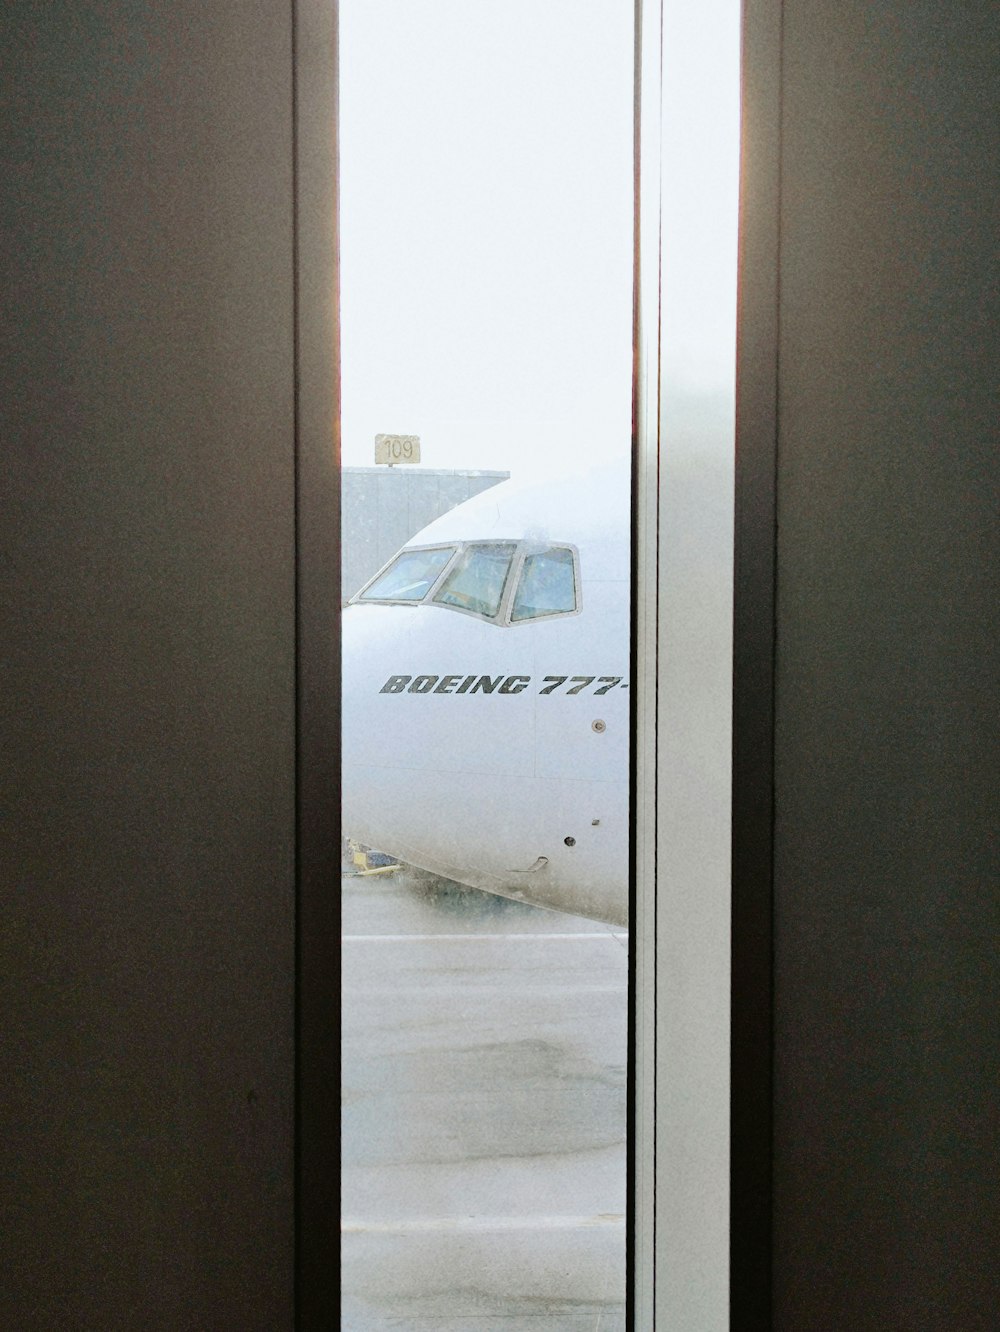 an airplane is seen through the open door